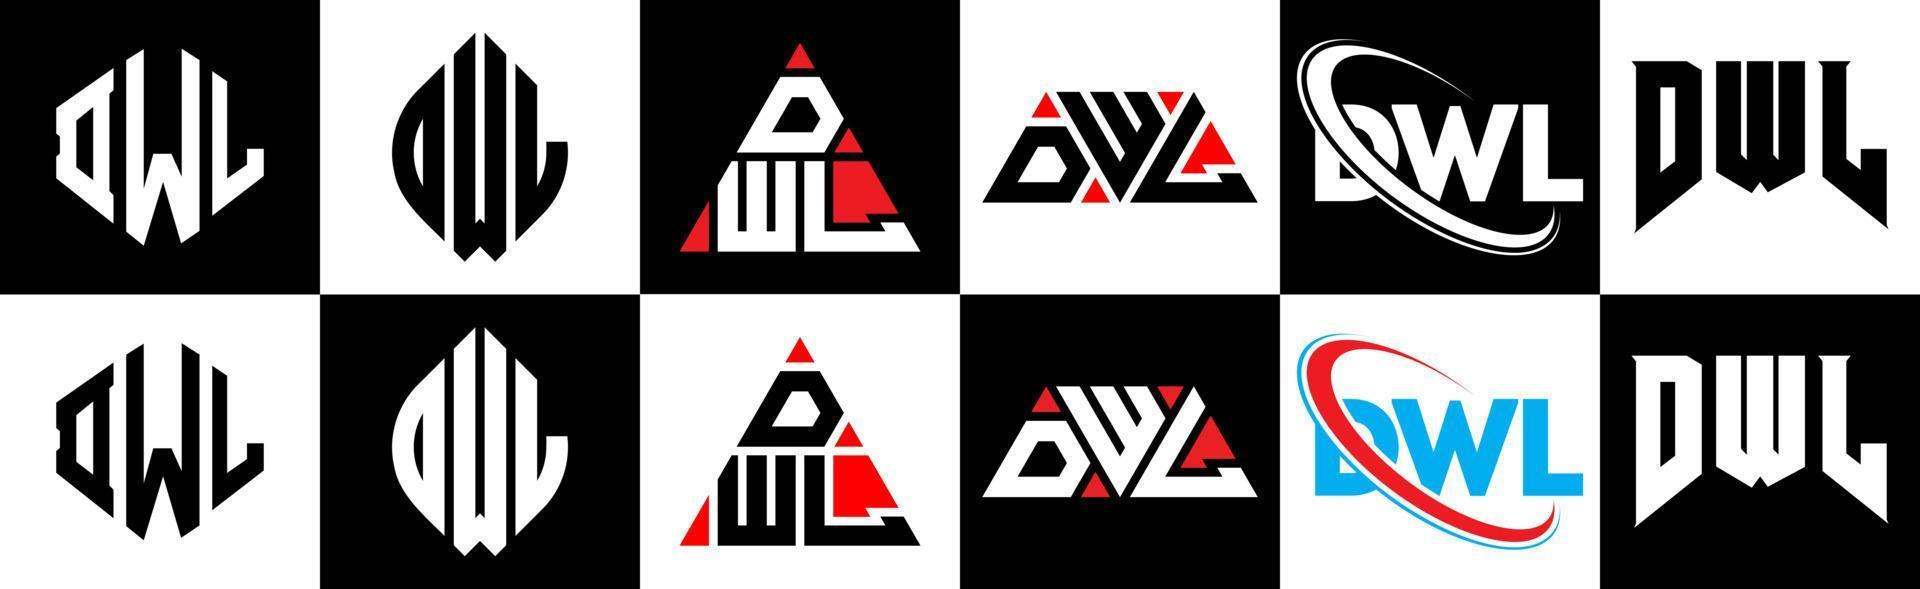 dwl-Buchstaben-Logo-Design in sechs Stilen. dwl Polygon, Kreis, Dreieck, Sechseck, flacher und einfacher Stil mit schwarz-weißem Buchstabenlogo in einer Zeichenfläche. dwl minimalistisches und klassisches Logo vektor